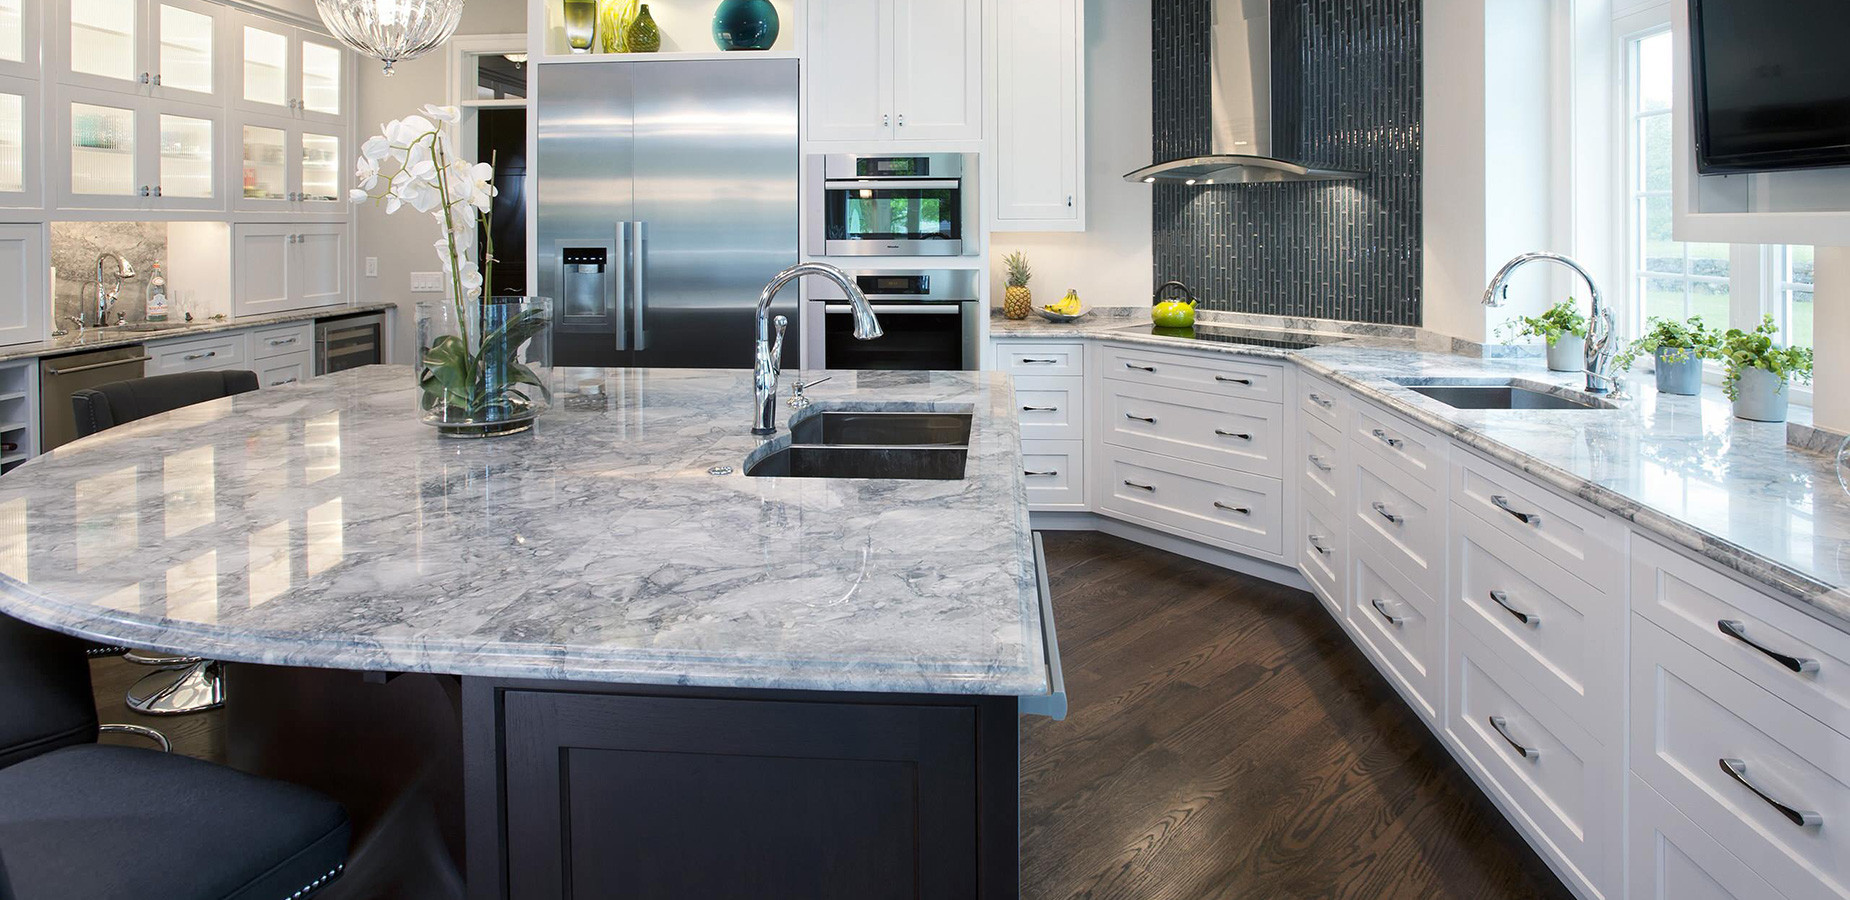 Kitchen Granite Countertop Cost
 Quartz Countertops Cost Less With Keystone Granite & Tile